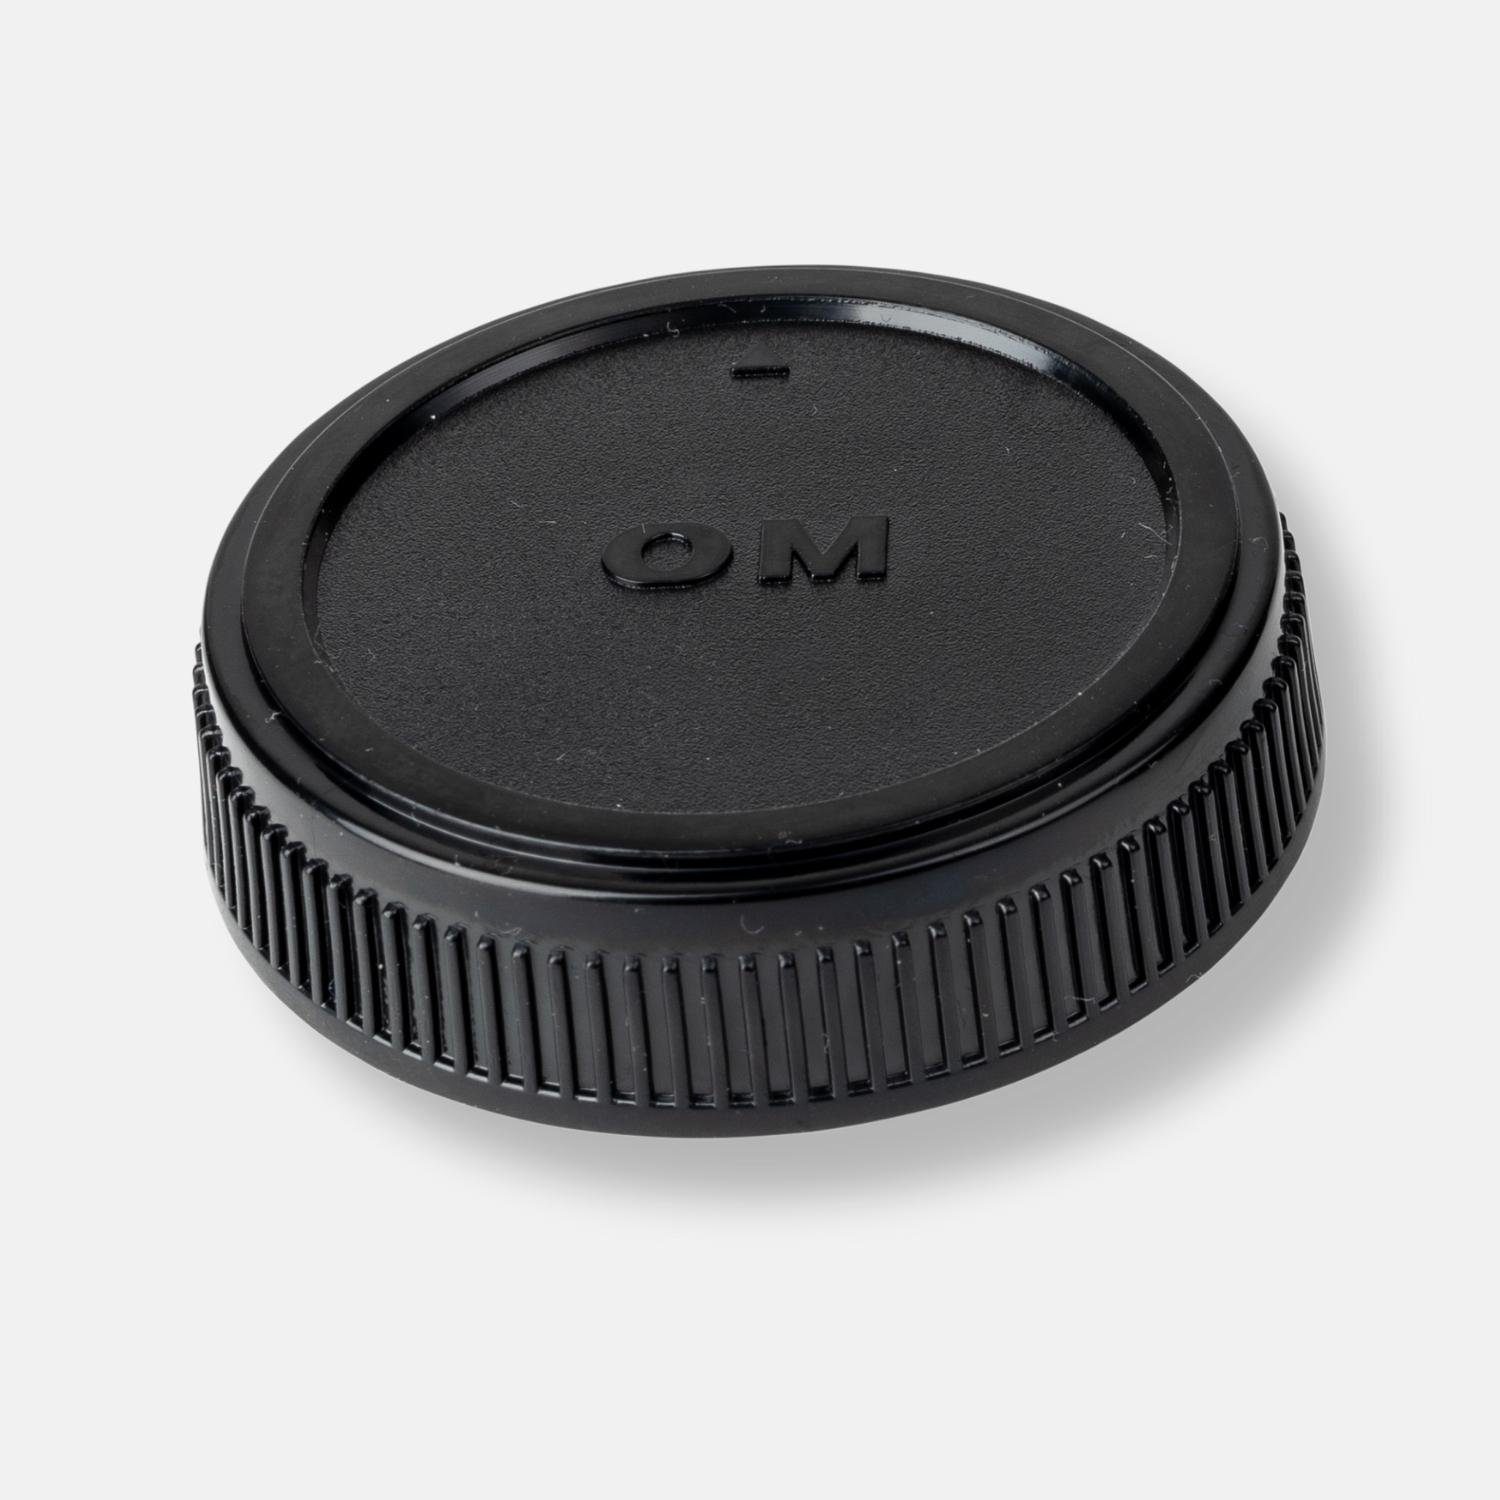 Lens-Aid Objektivrückdeckel Objektivrückdeckel für Olympus OM-Mount